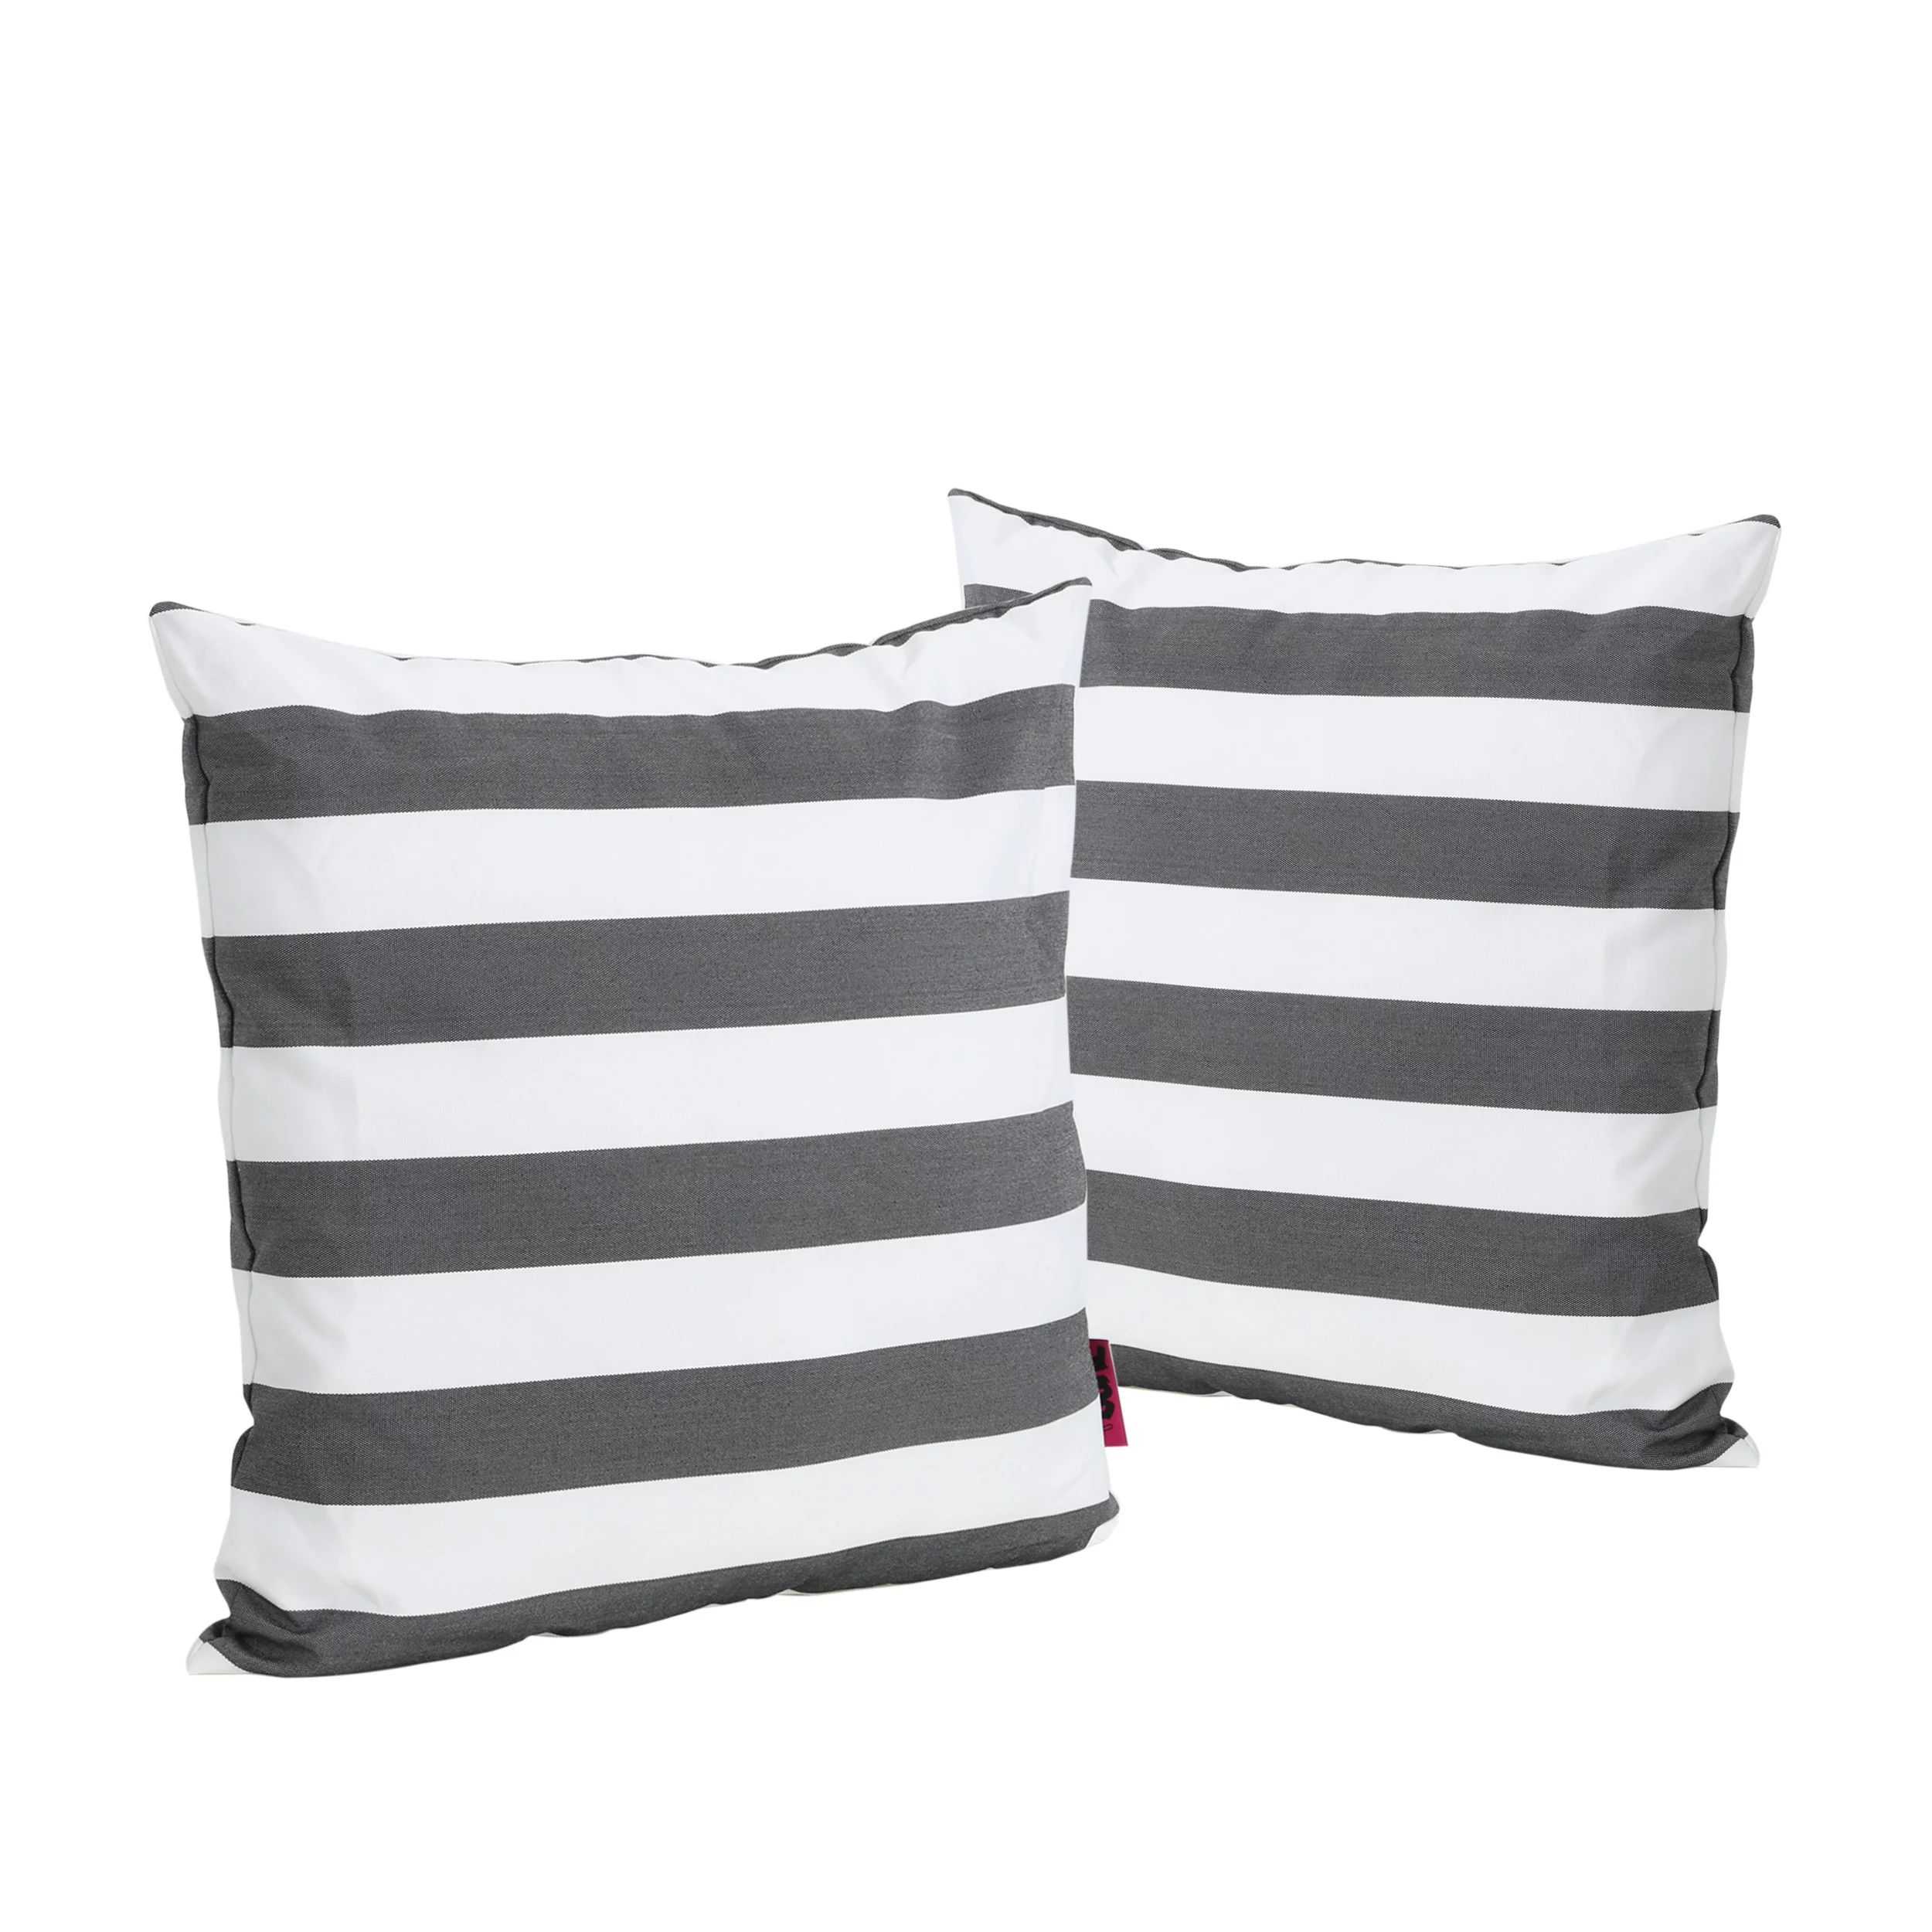 Coronado Outdoor Water Resistant Square Throw Pillow, Set of 2, Black and White Stripe | Walmart (US)